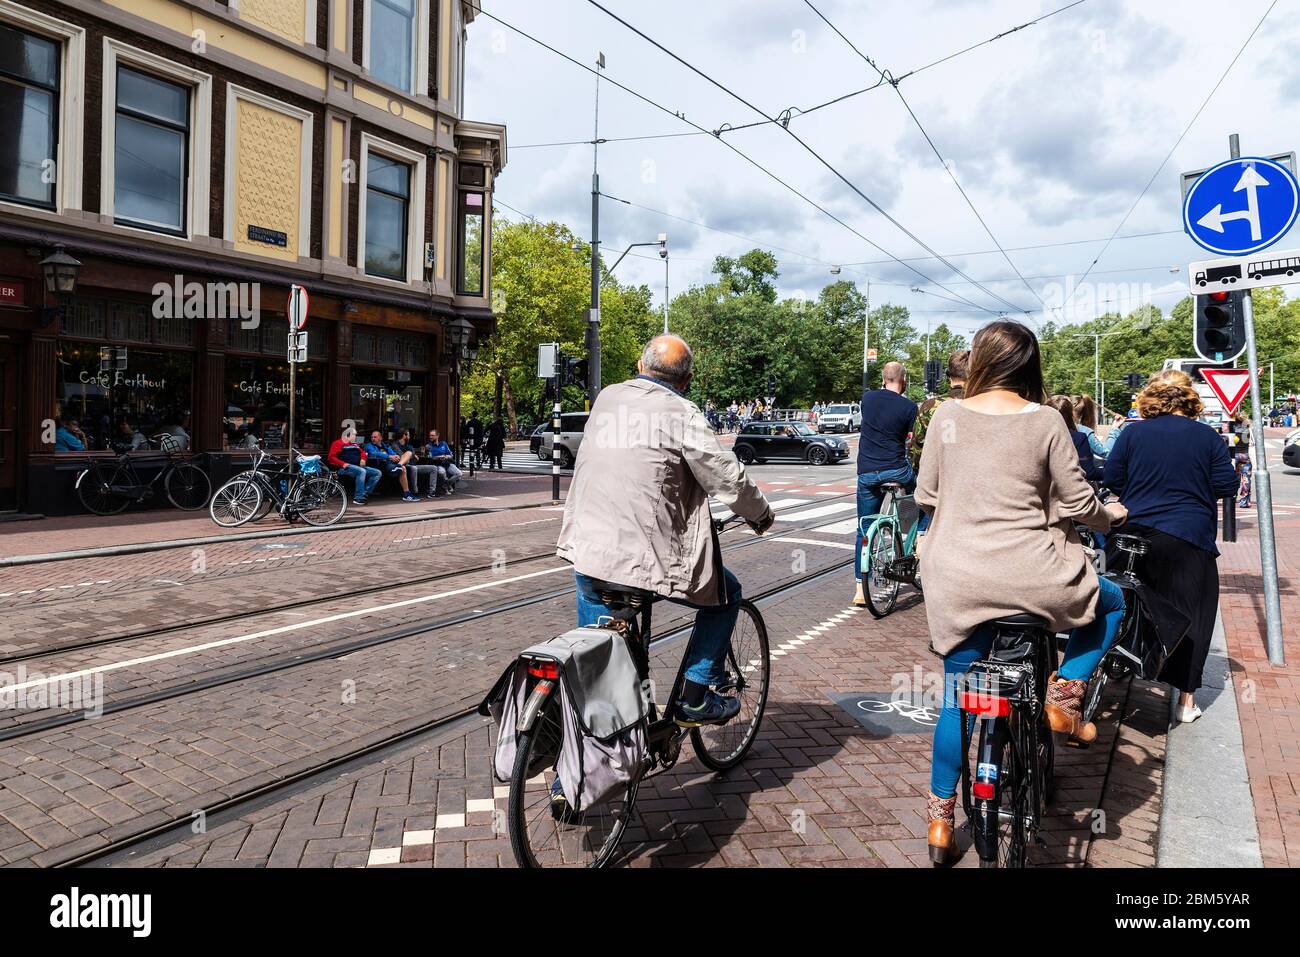 Amsterdam, pays-Bas - 8 septembre 2018 : rue avec des personnes à vélo dans la vieille ville d'Amsterdam, pays-Bas Banque D'Images